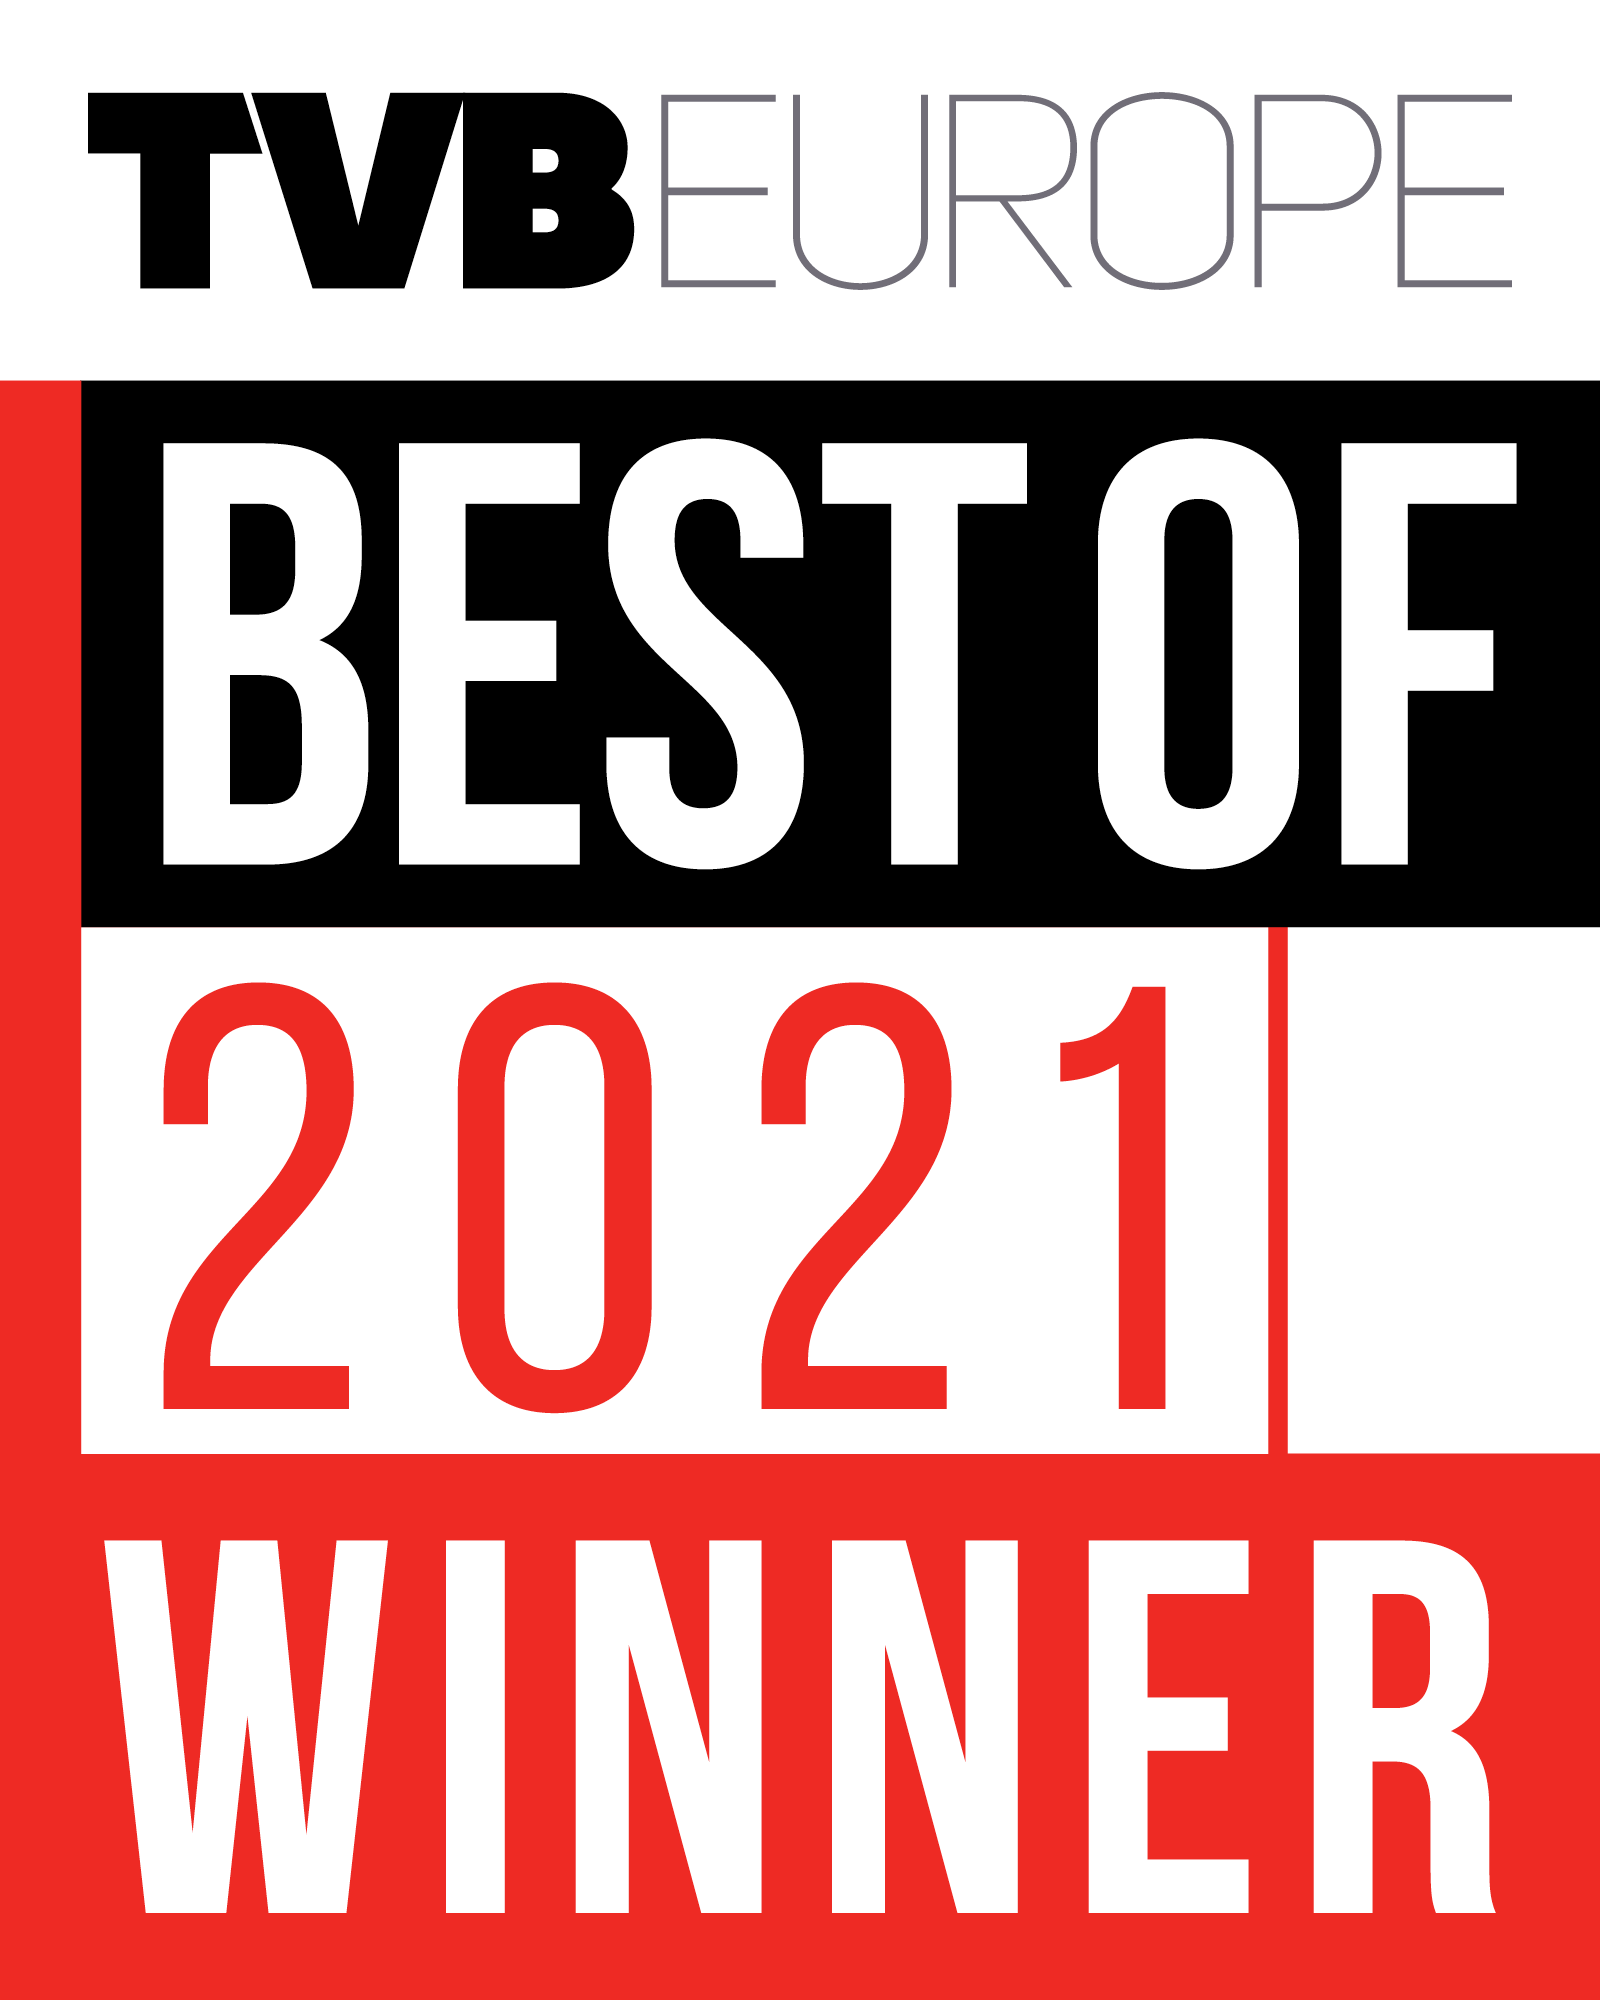 TVB Europe best of 2021 winner